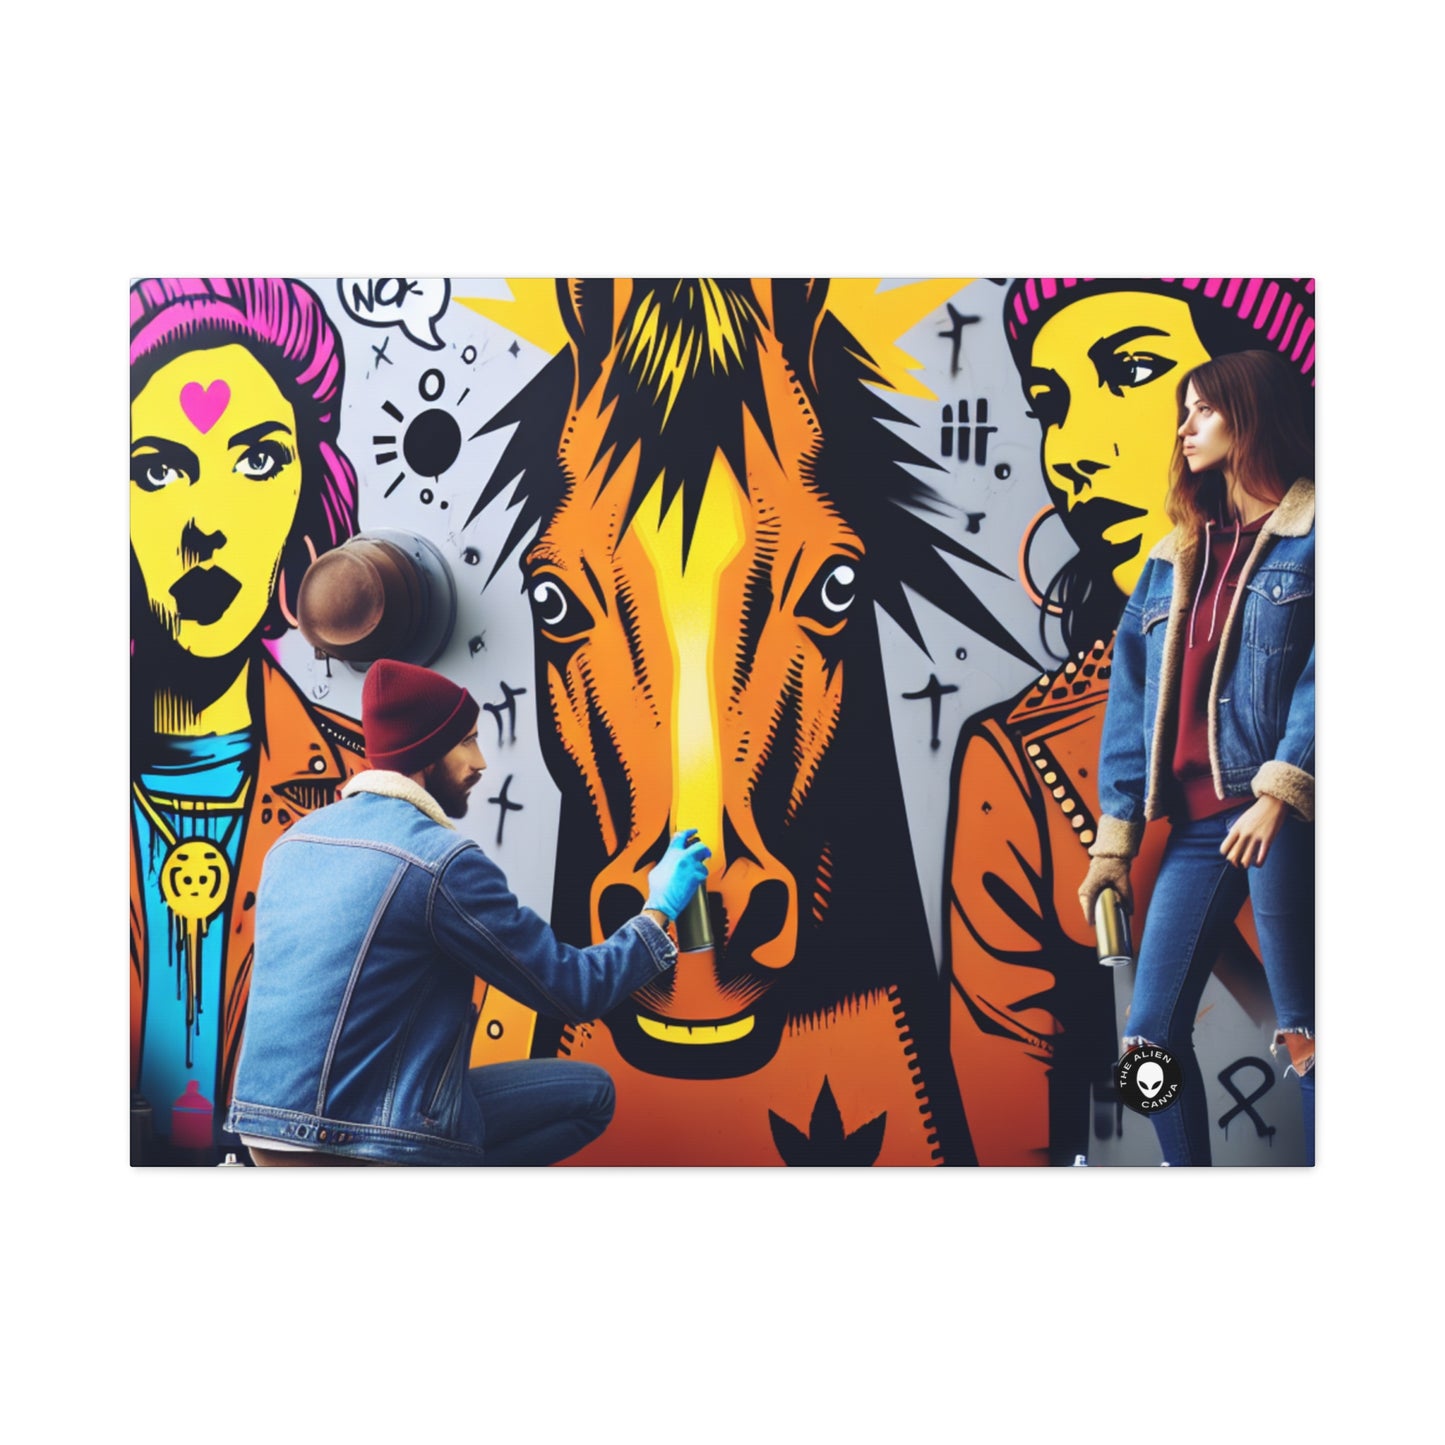 "Unidad en la diversidad: un vibrante mural de arte callejero" - The Alien Canva Street Art